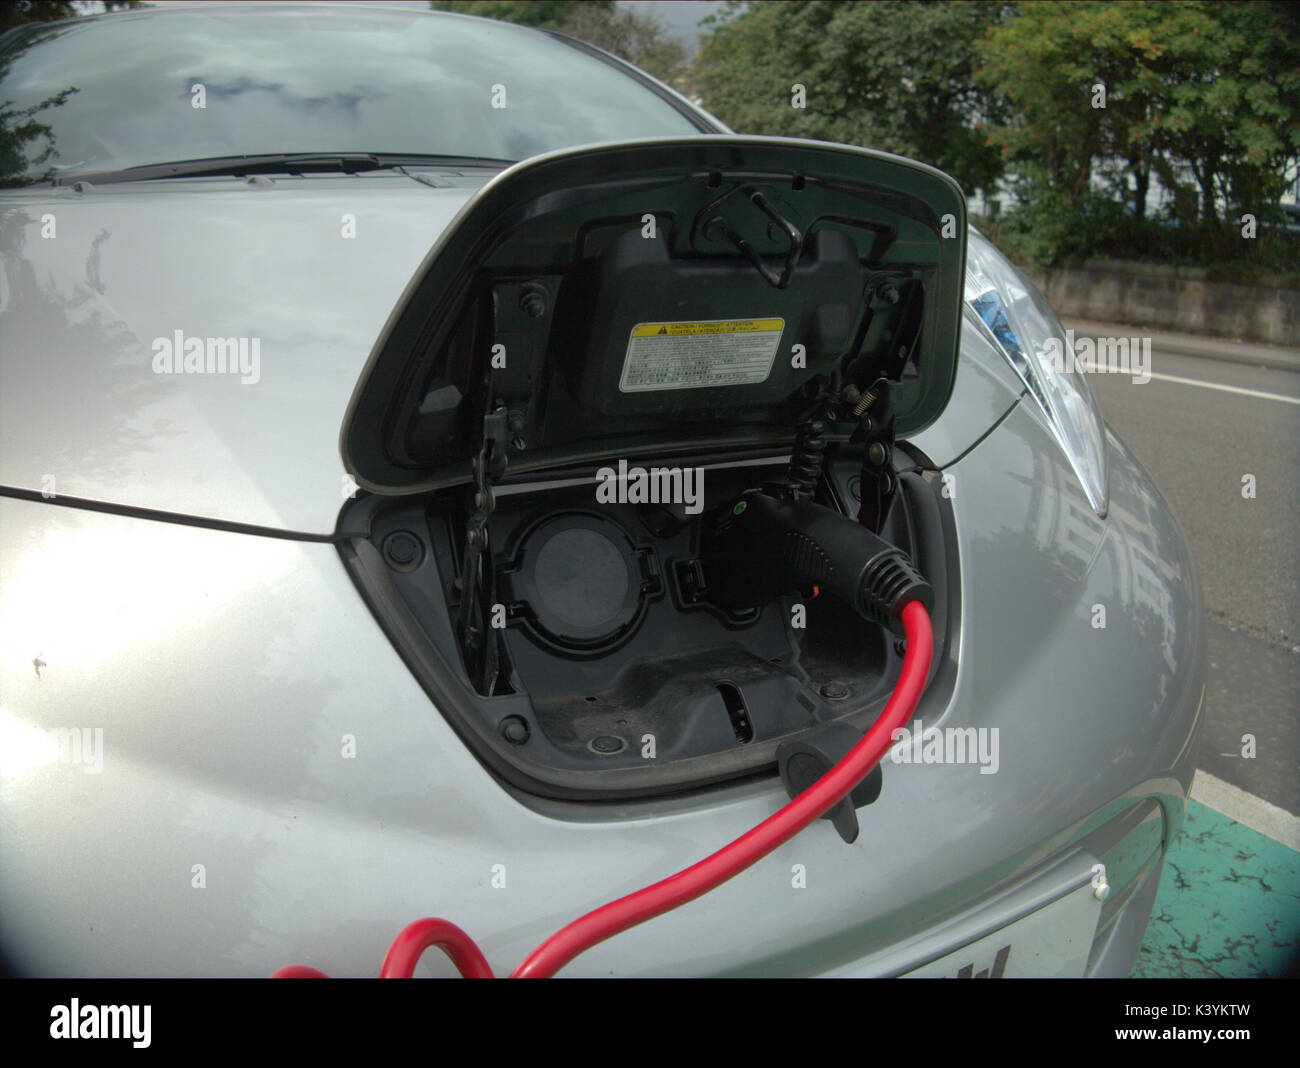 Auto angeschlossene elektrische Auto Ladegerät Punkt mit Symbolen und Zeichen Siemens Ladegerät des Elektrofahrzeugs Glasgow geladen wird Stockfoto